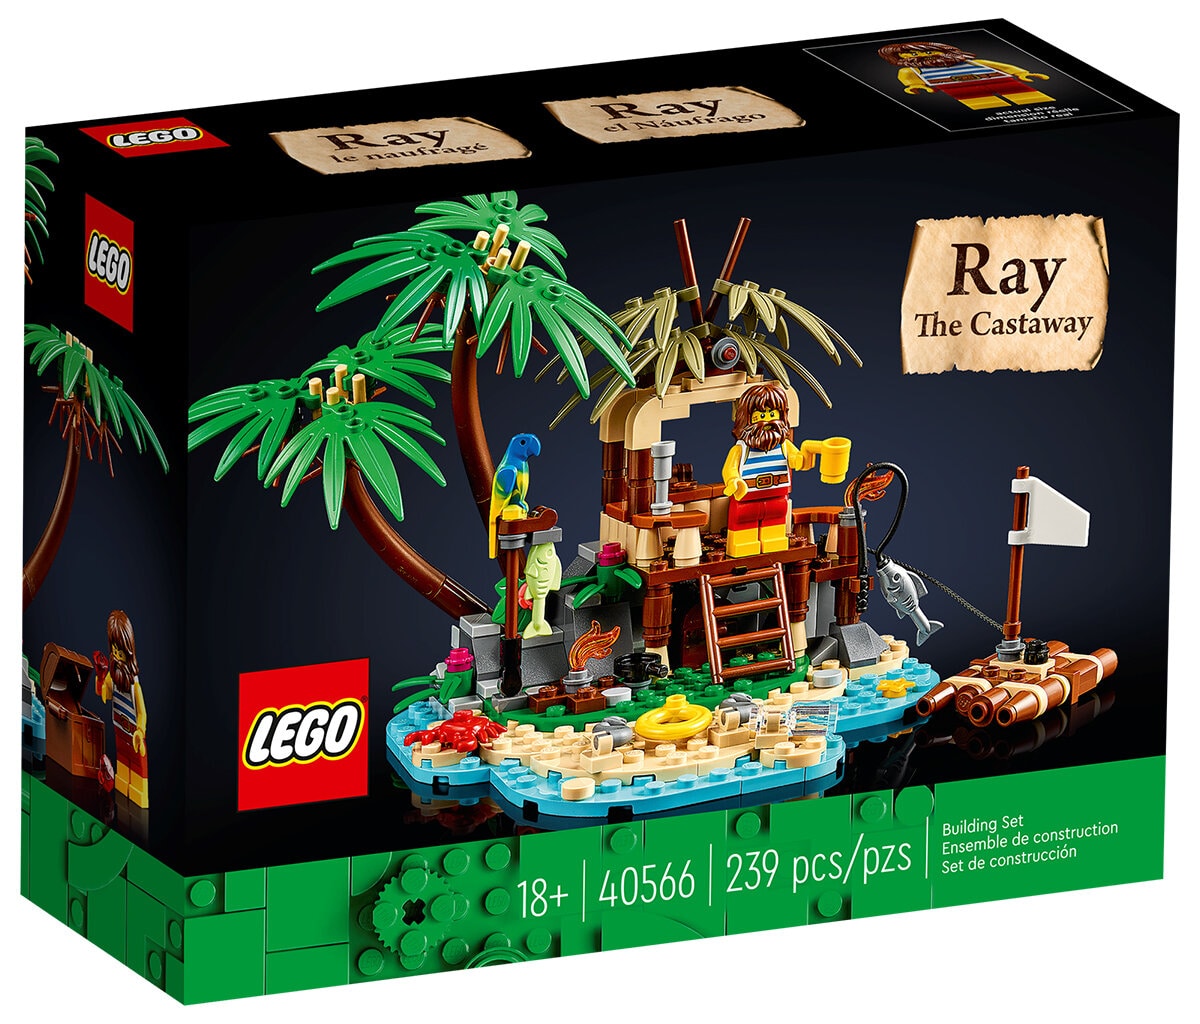 Trois cadeaux offerts chez LEGO : le mini set LEGO Ideas 40566 Ray